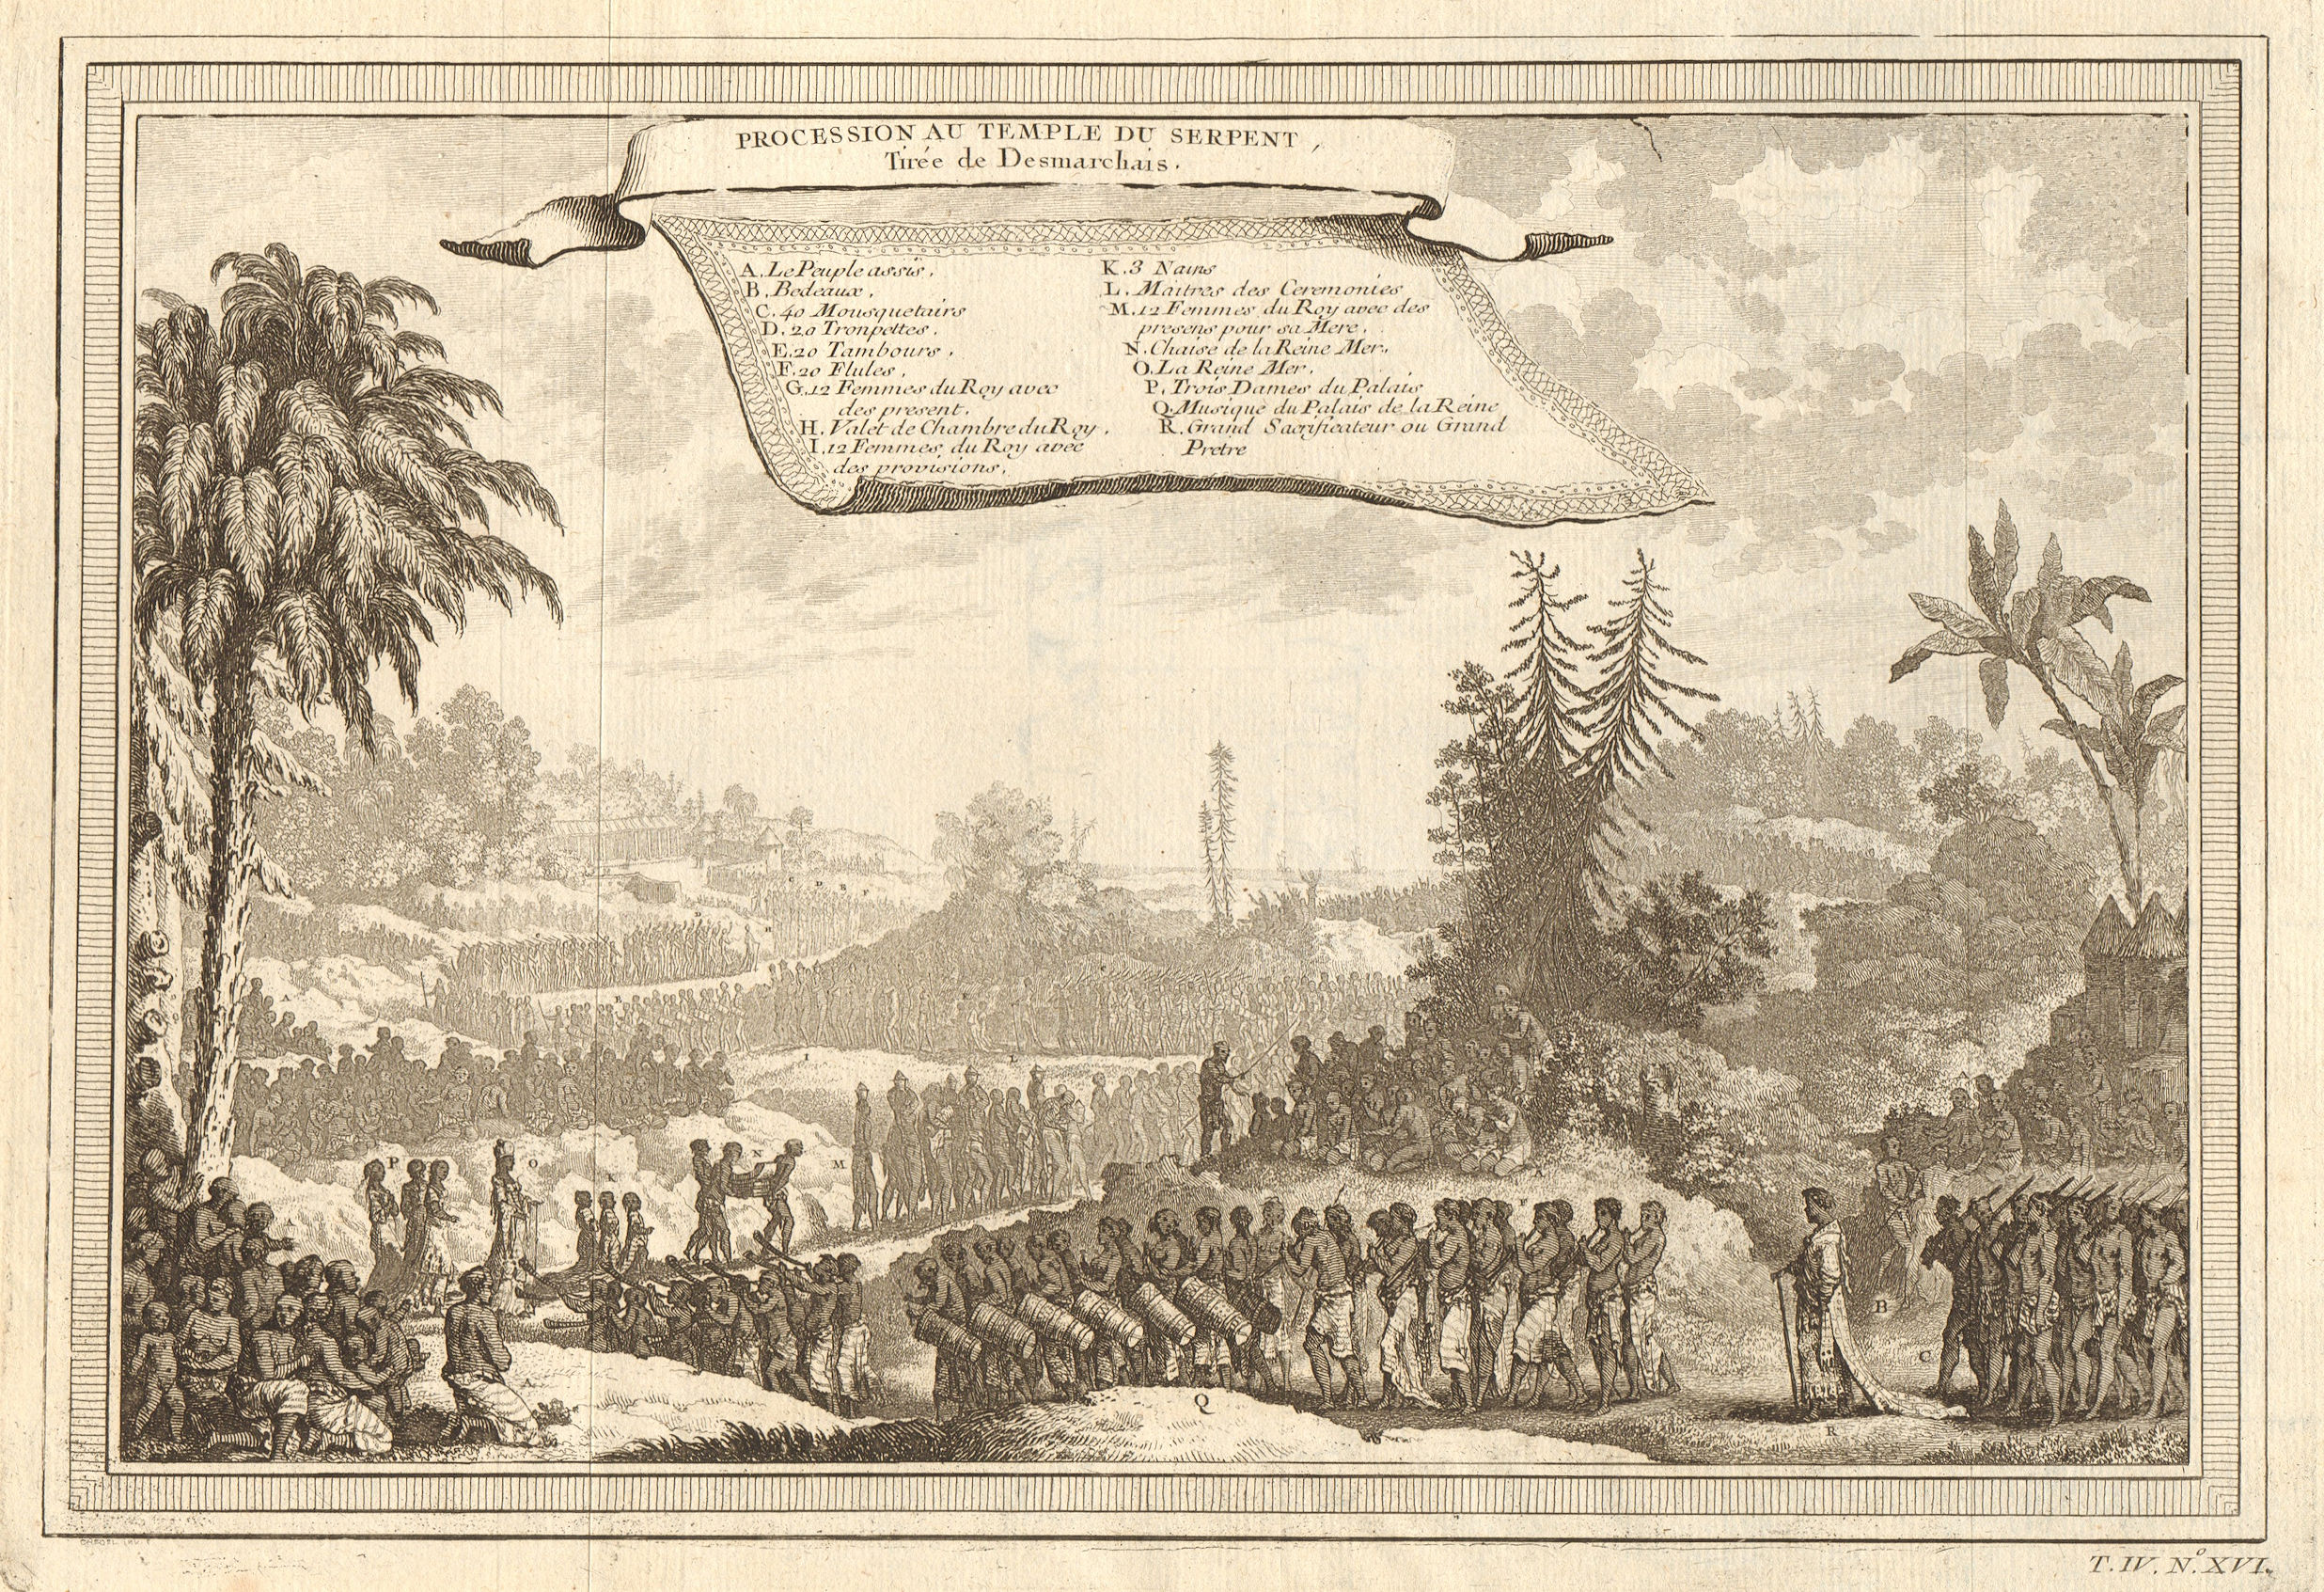 'Procession au Temple du Serpent'. Whydah Ouidah Serpent cult. Desmarchais 1747